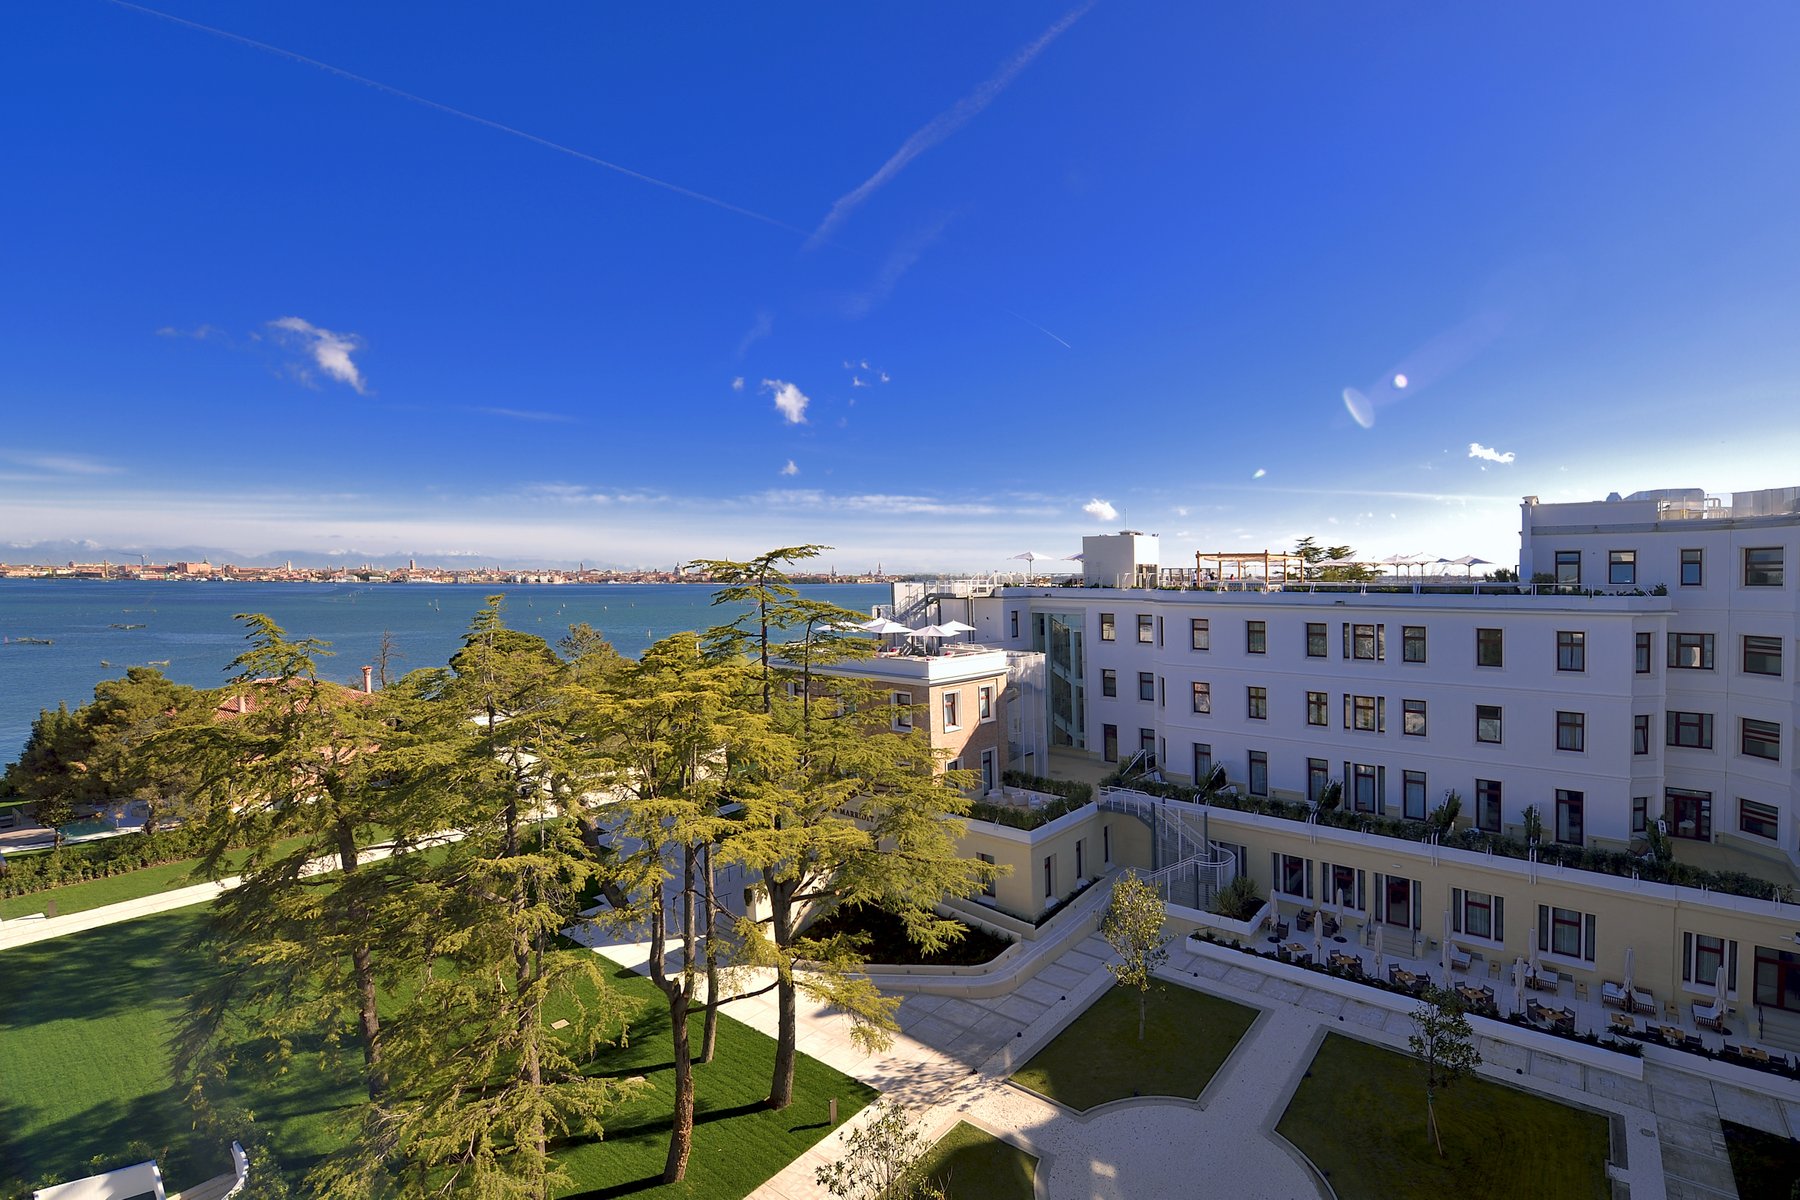 Marriott открыла первый отель-курорт в Венецианской лагуне